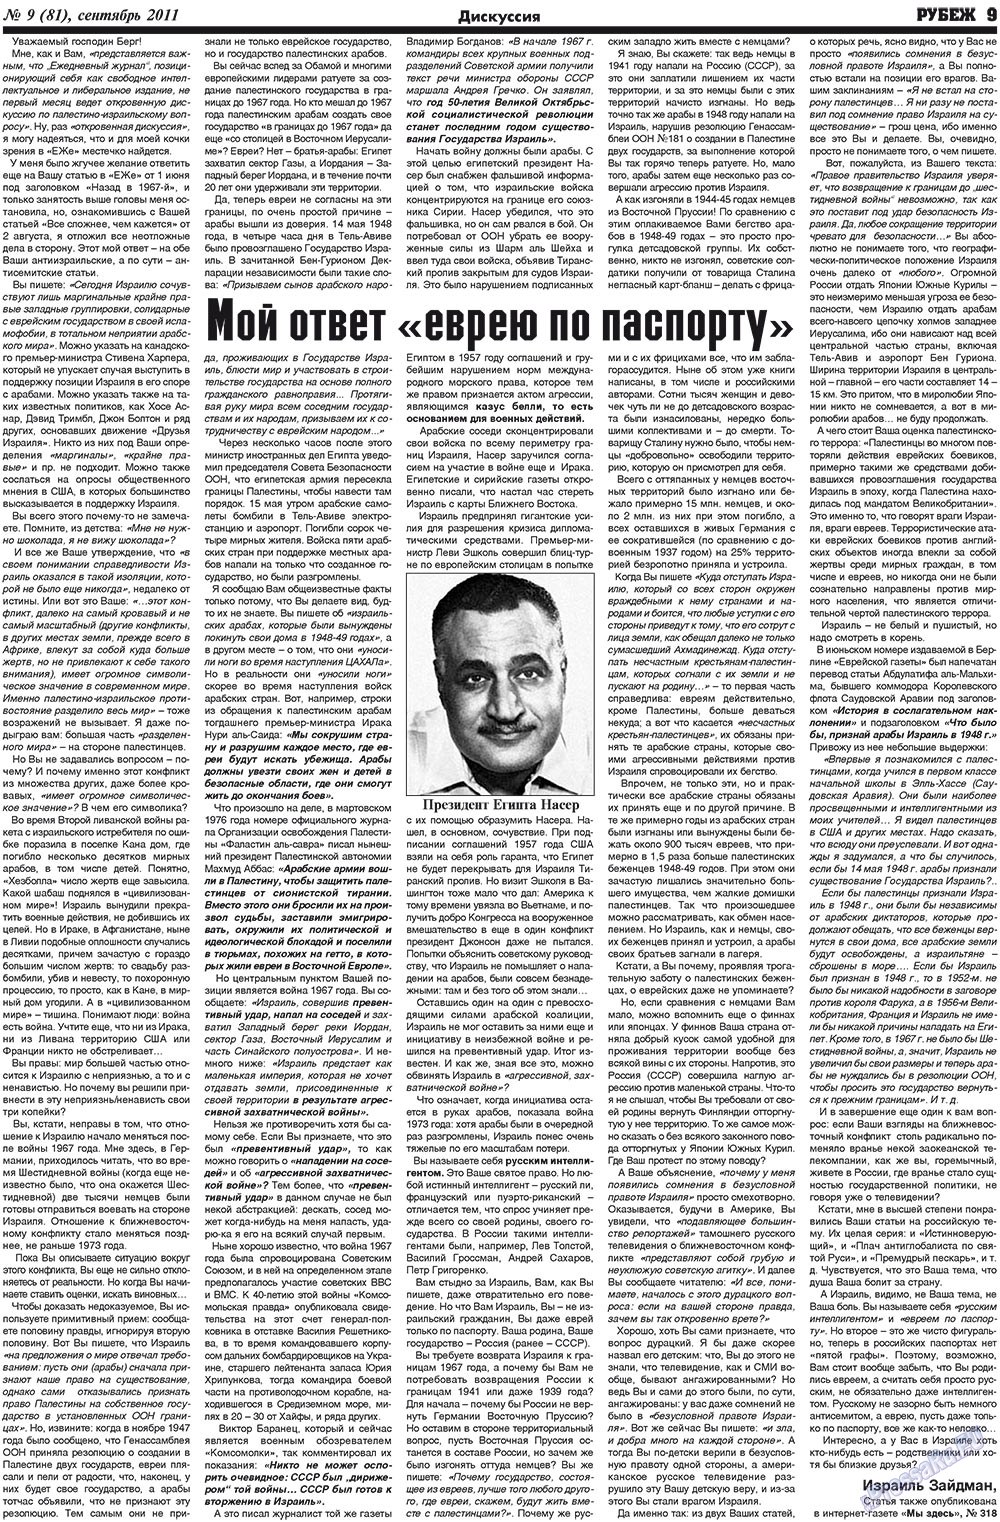 Рубеж (газета). 2011 год, номер 9, стр. 9